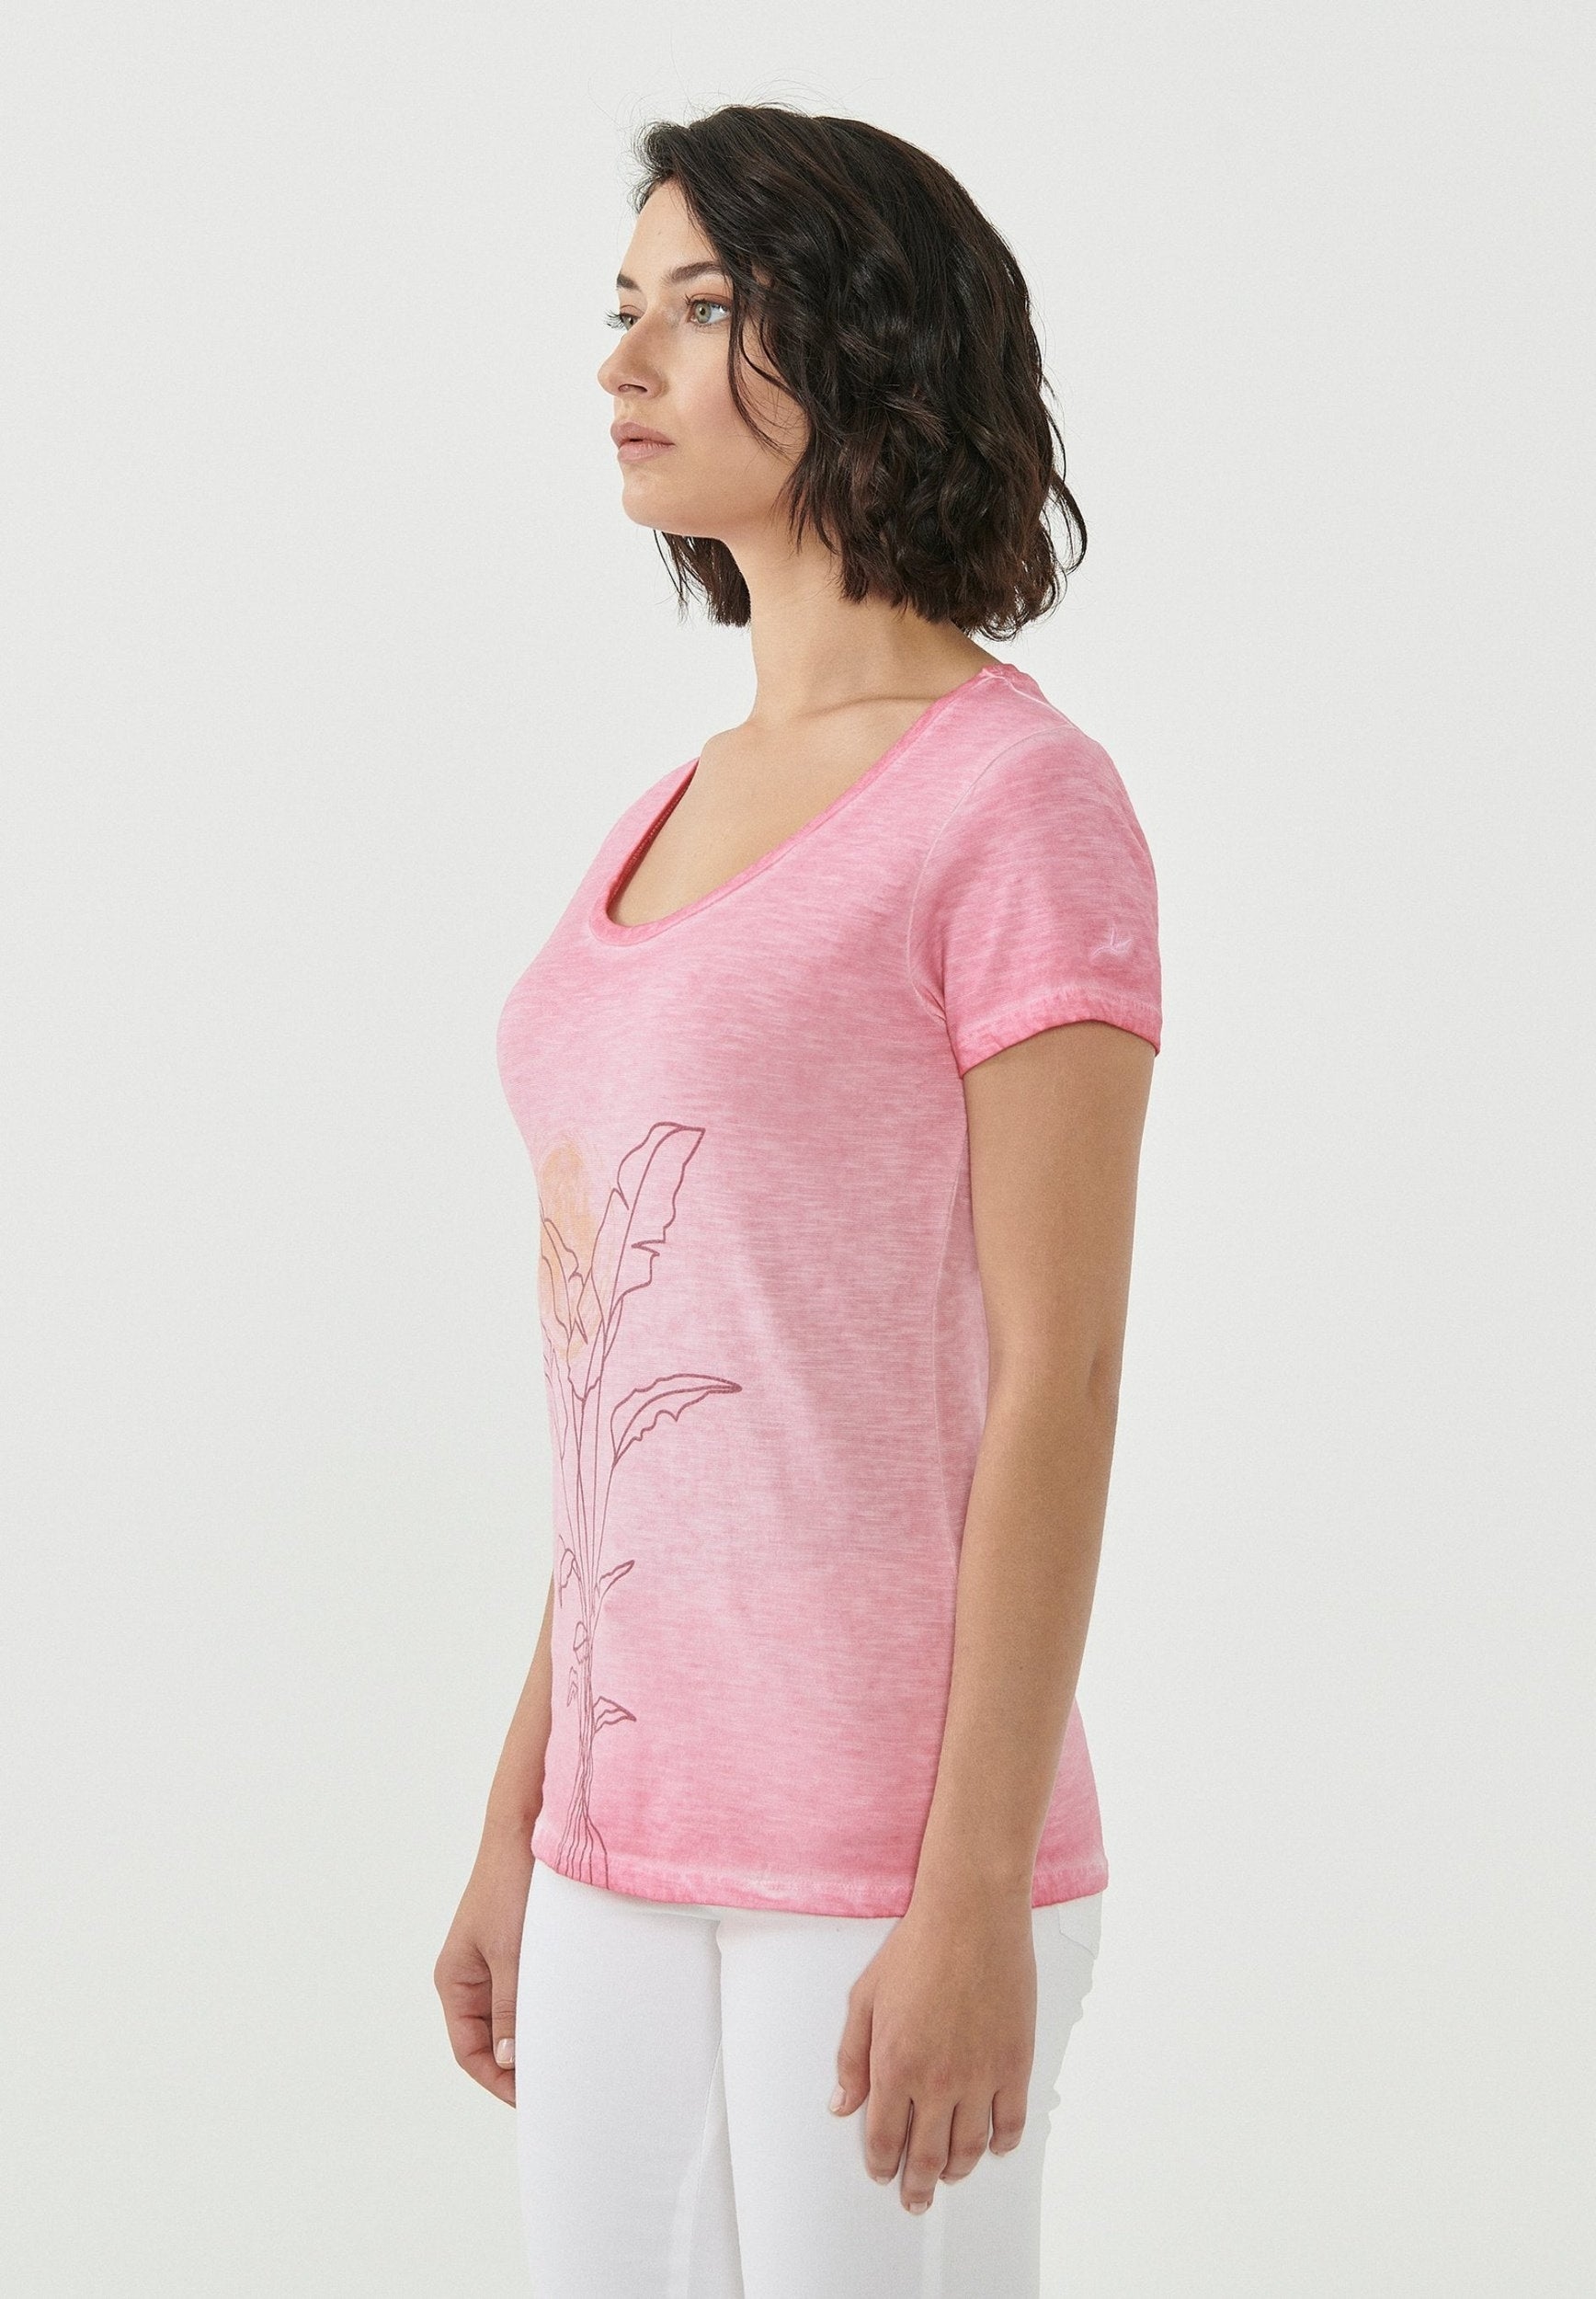 Garment Dyed T-Shirt aus Bio-Baumwolle mit Pflanzen-Print